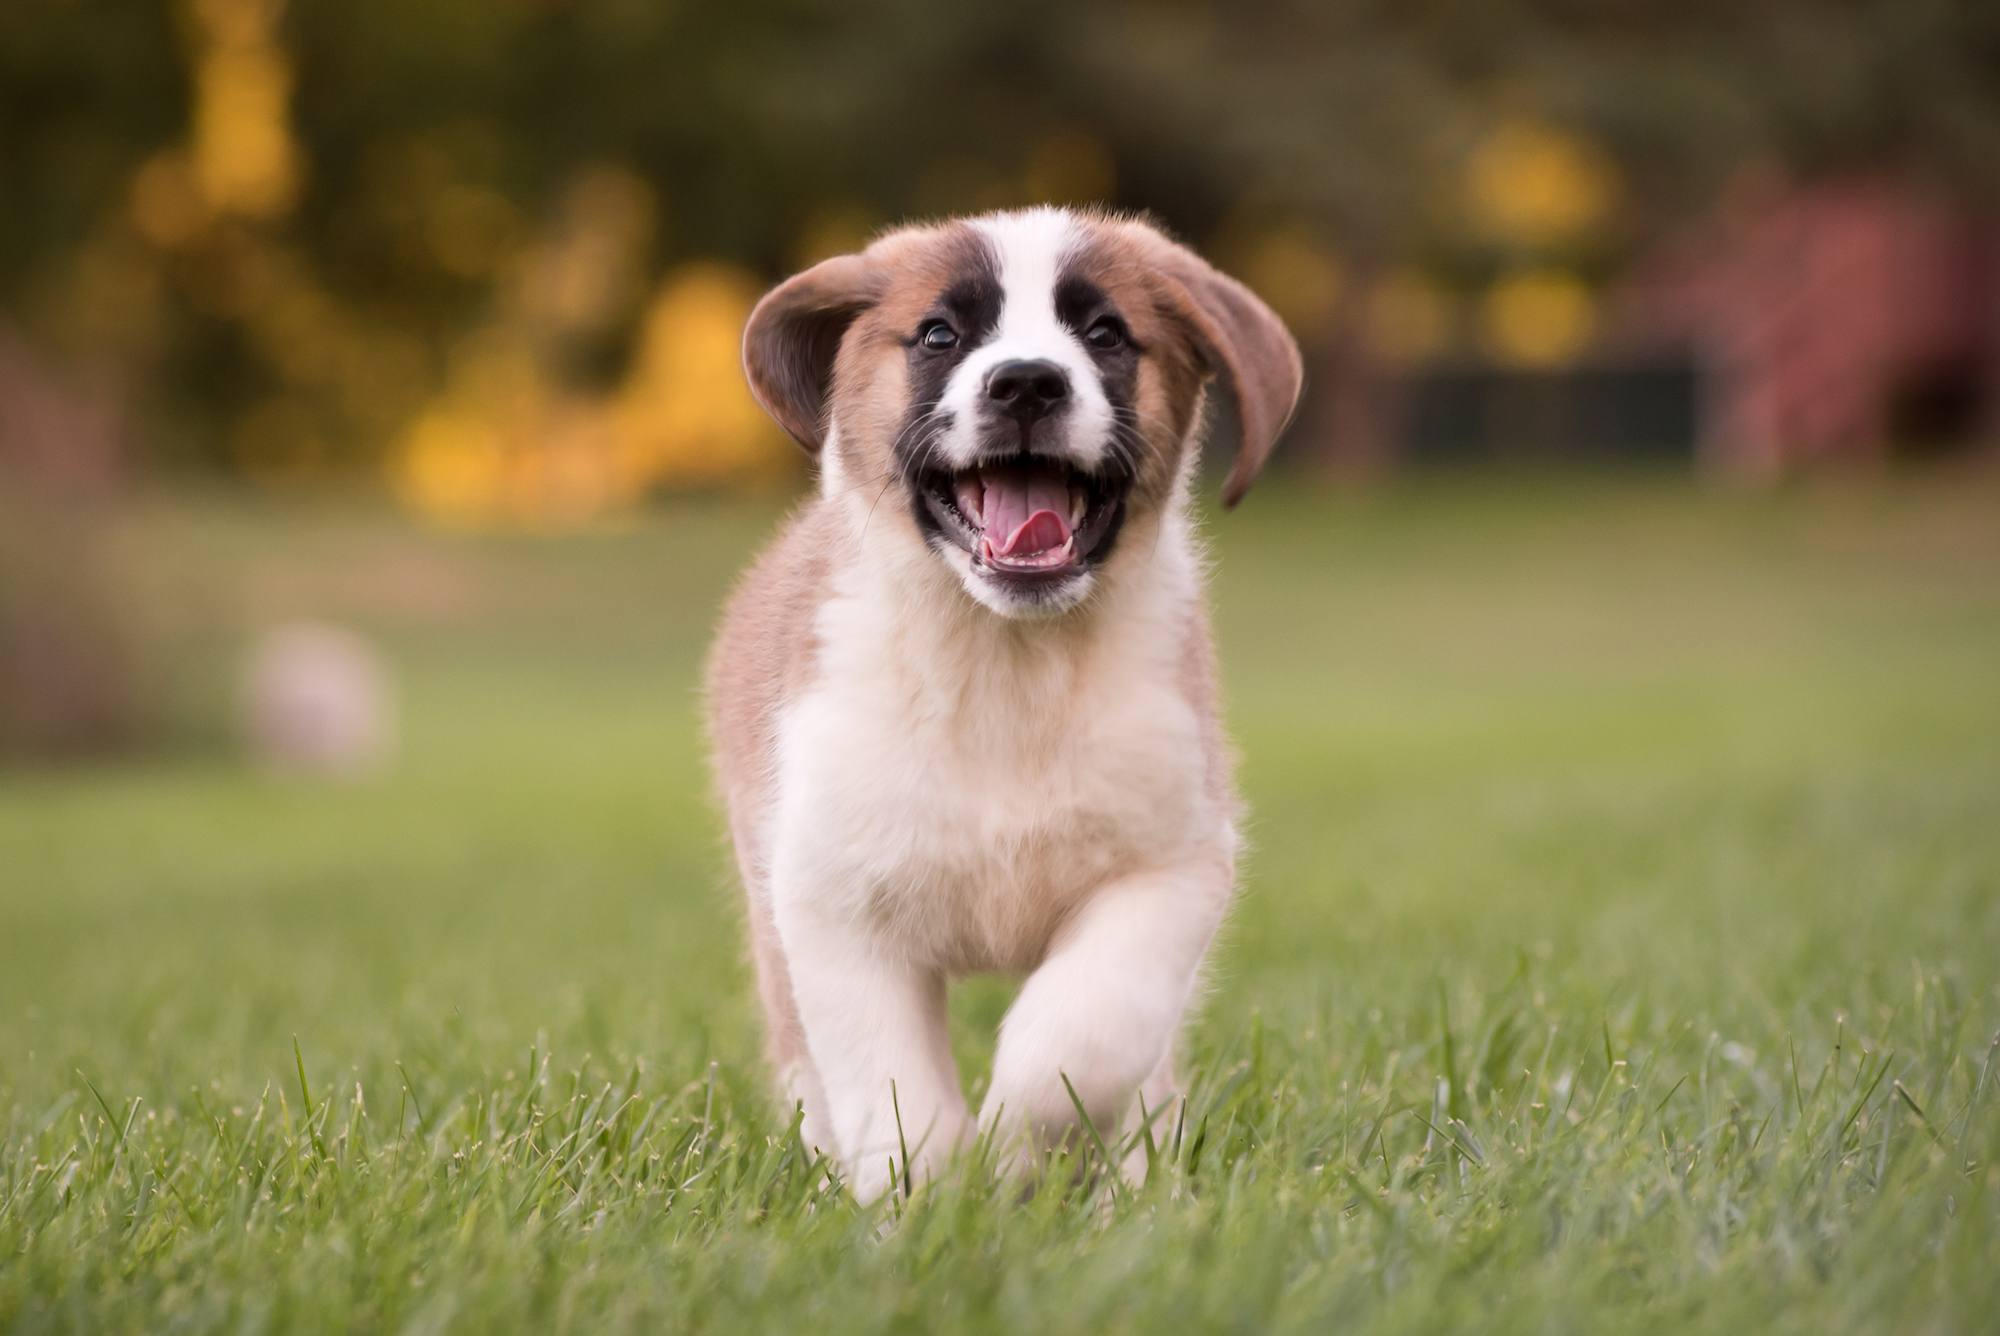 A Saint Bernard puppy runs in the grass